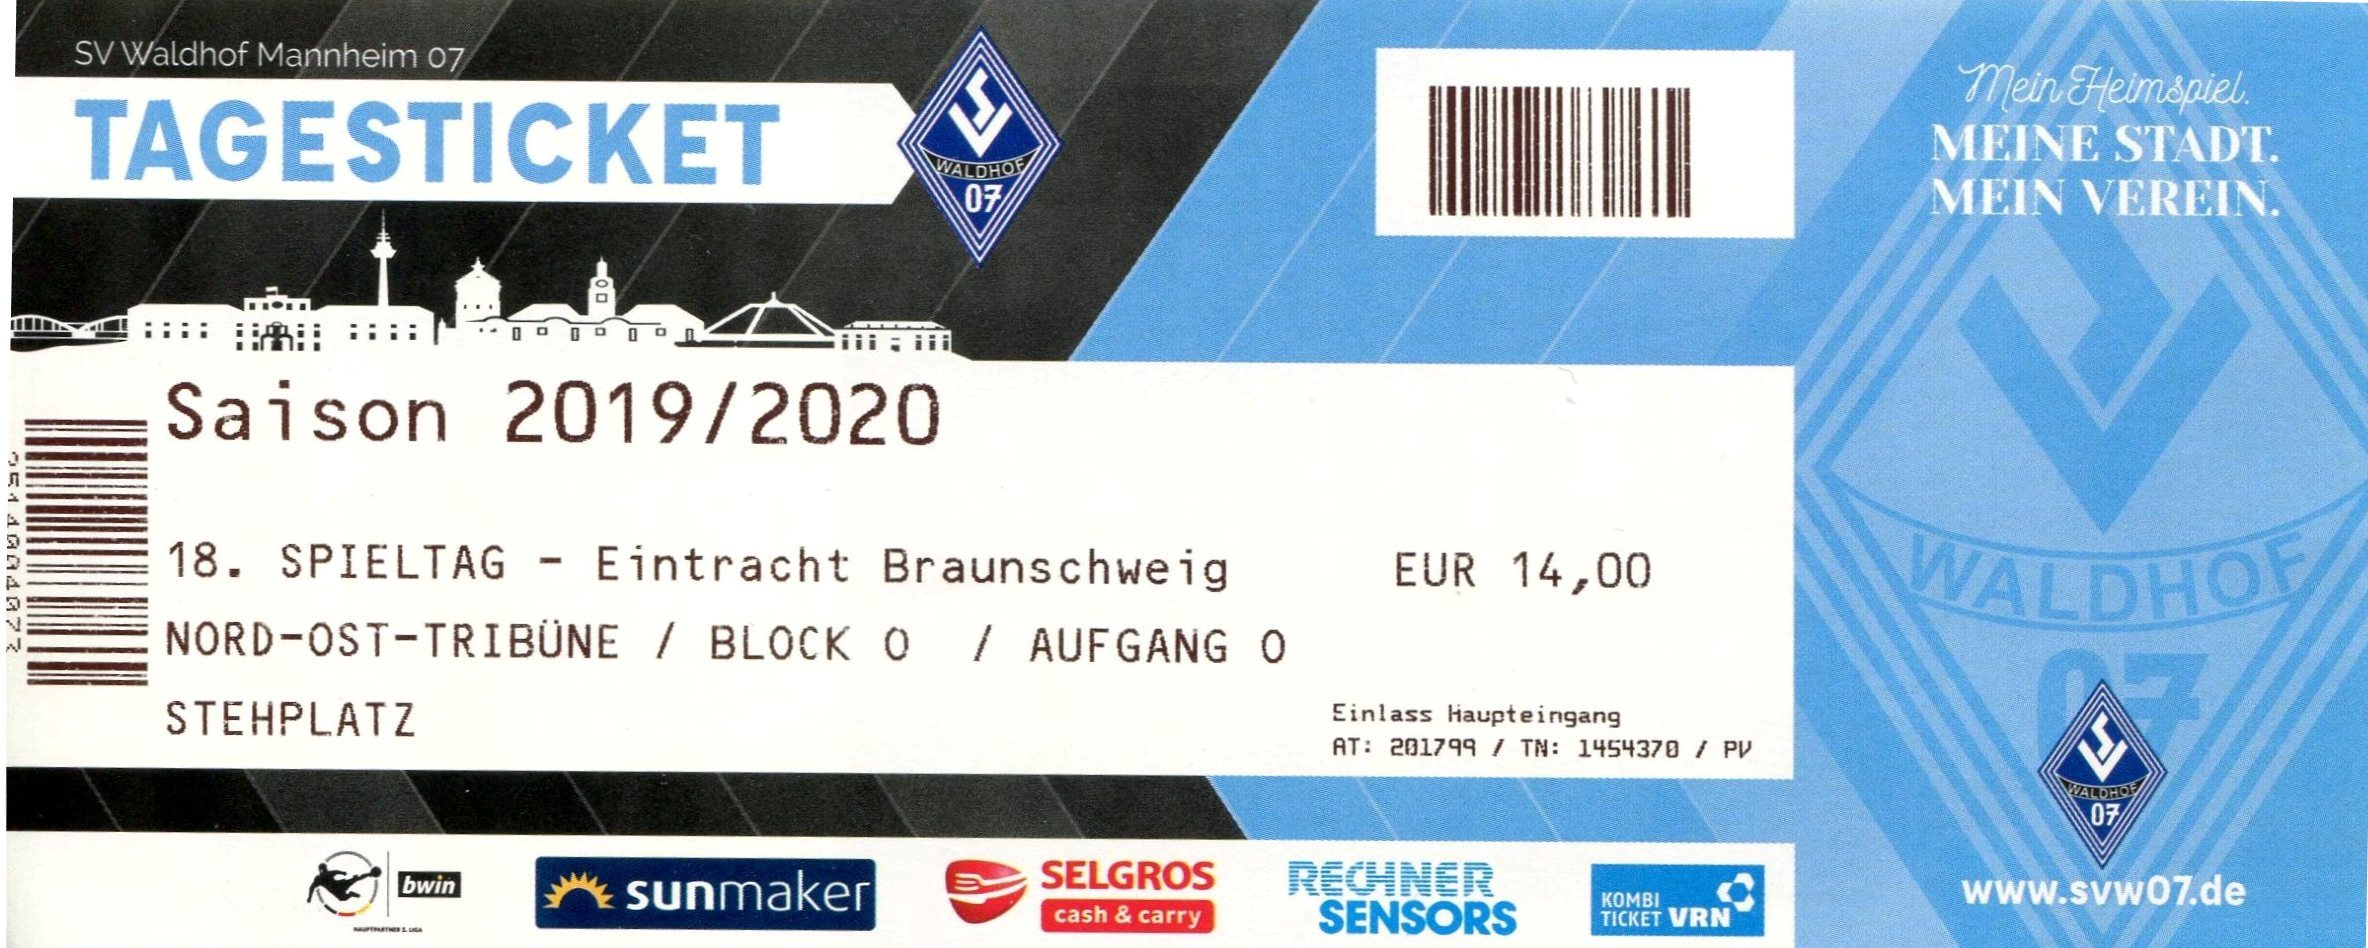 Eintrittskarte 18.Spieltag 2019-2020 SVW Eintracht Braunschweig.jpg